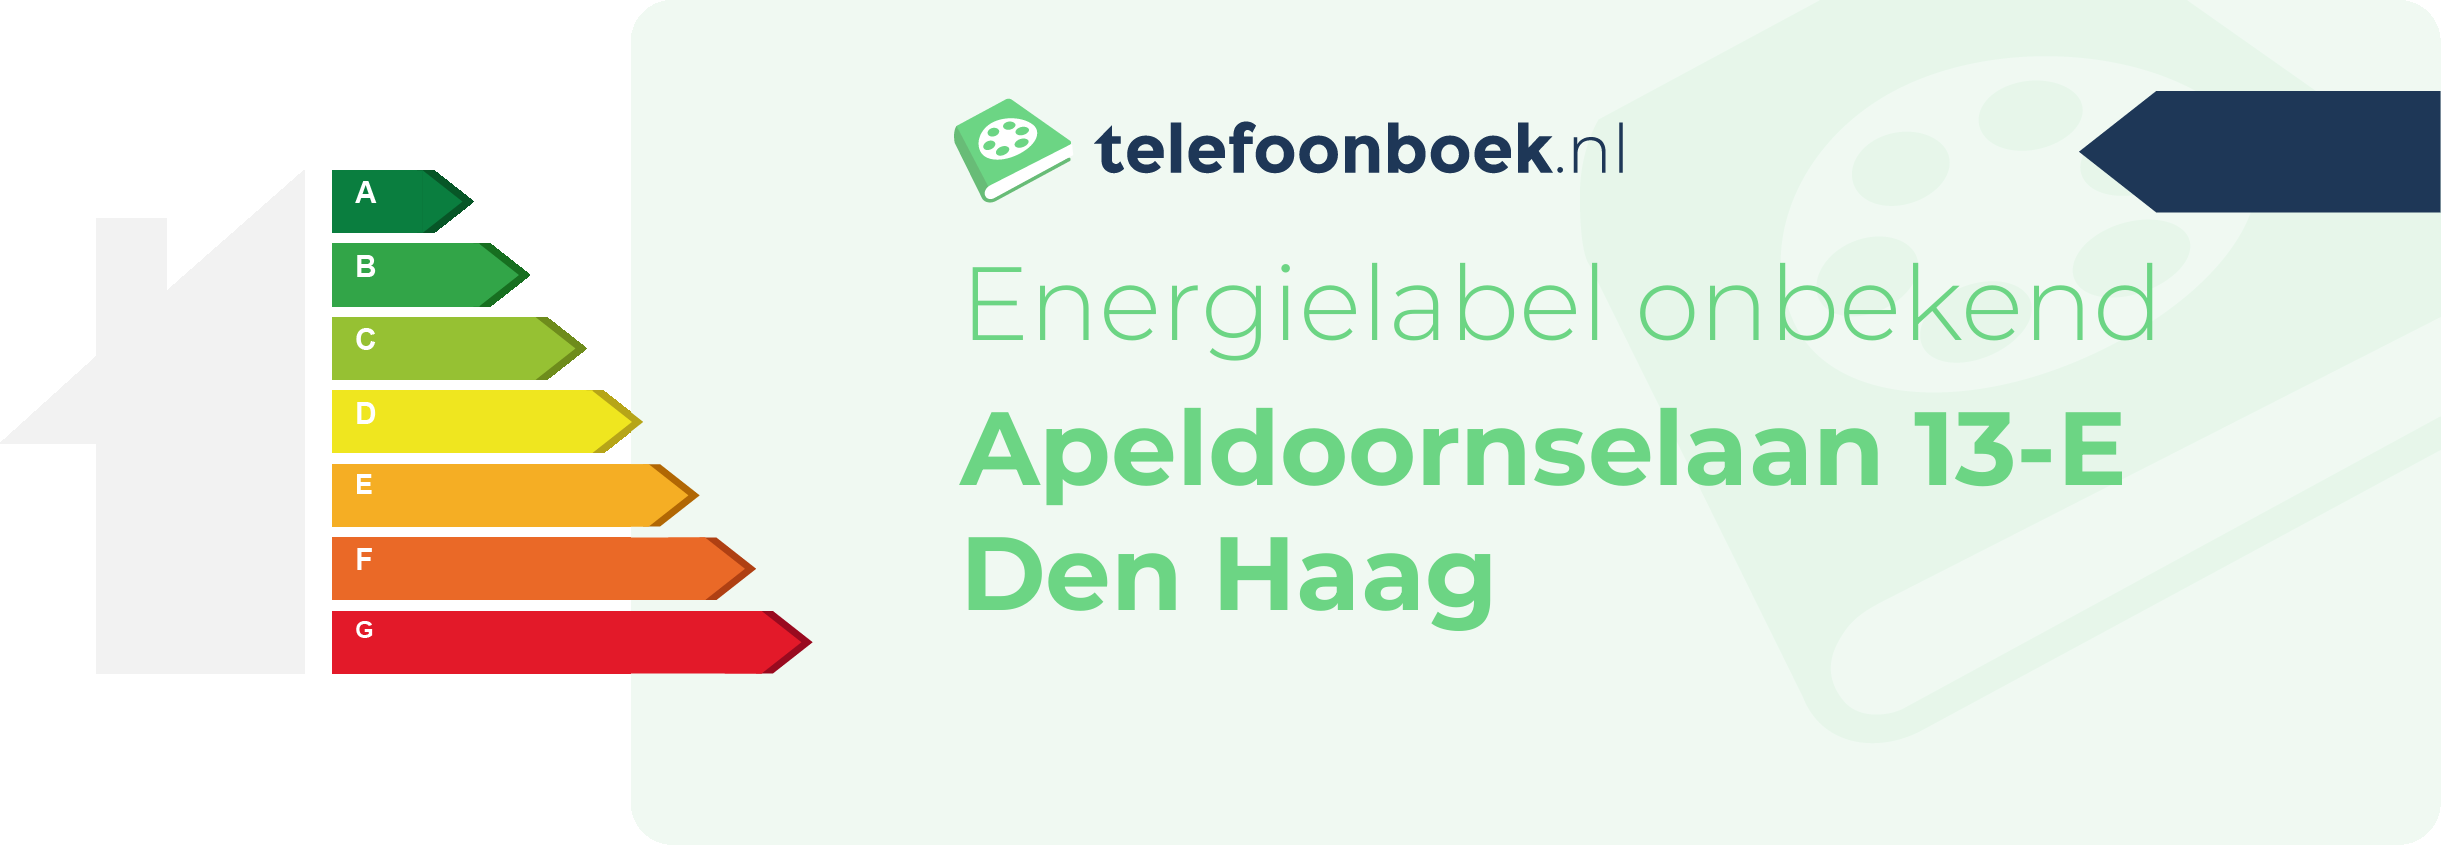 Energielabel Apeldoornselaan 13-E Den Haag